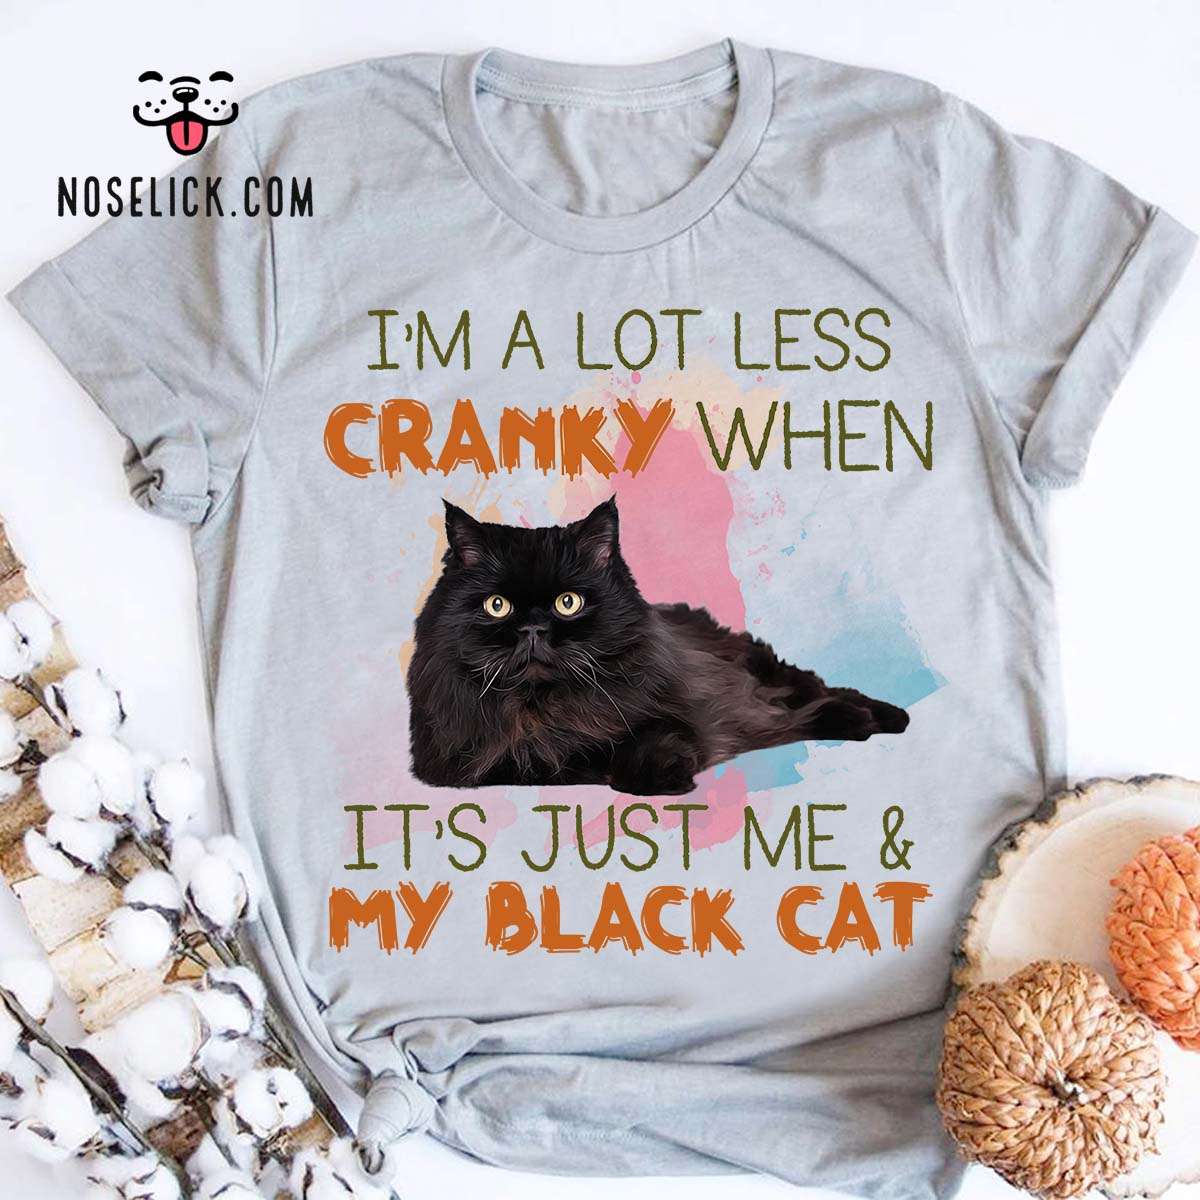 I'm a lot less cranky when - It's just me and my black cat - Black cat lover